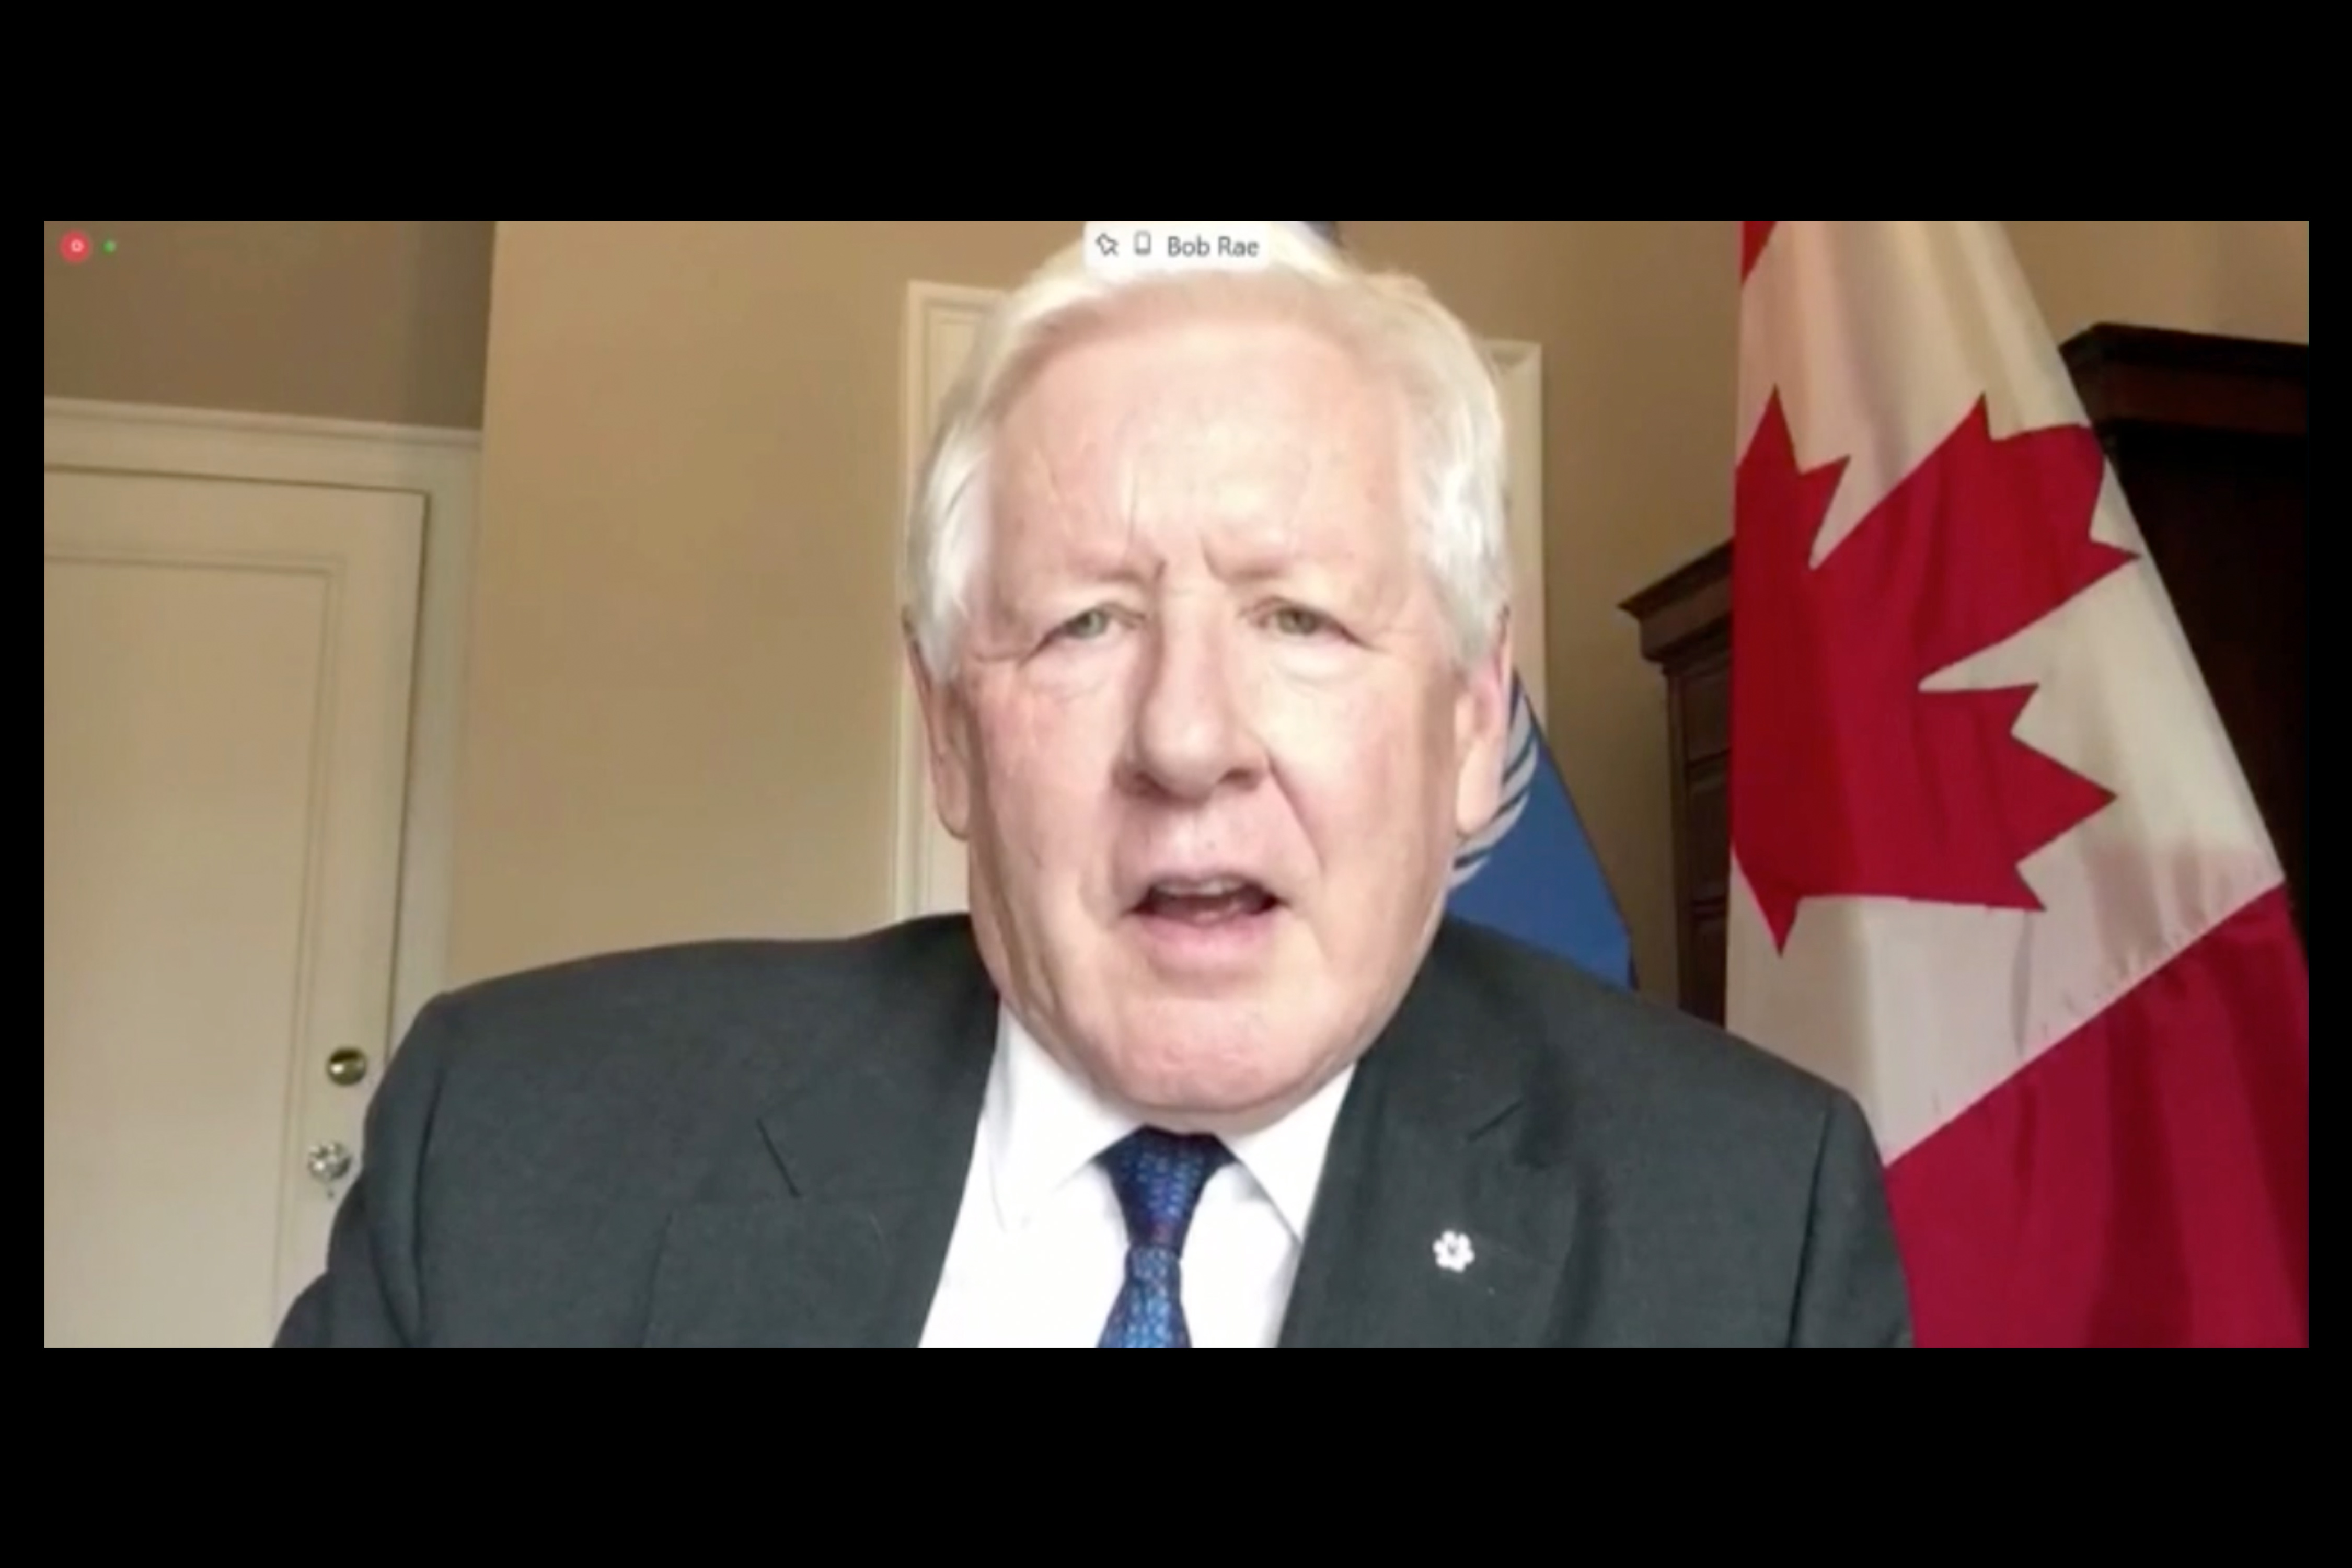 Bob Rae, Permanent Representative of Canada to the UN